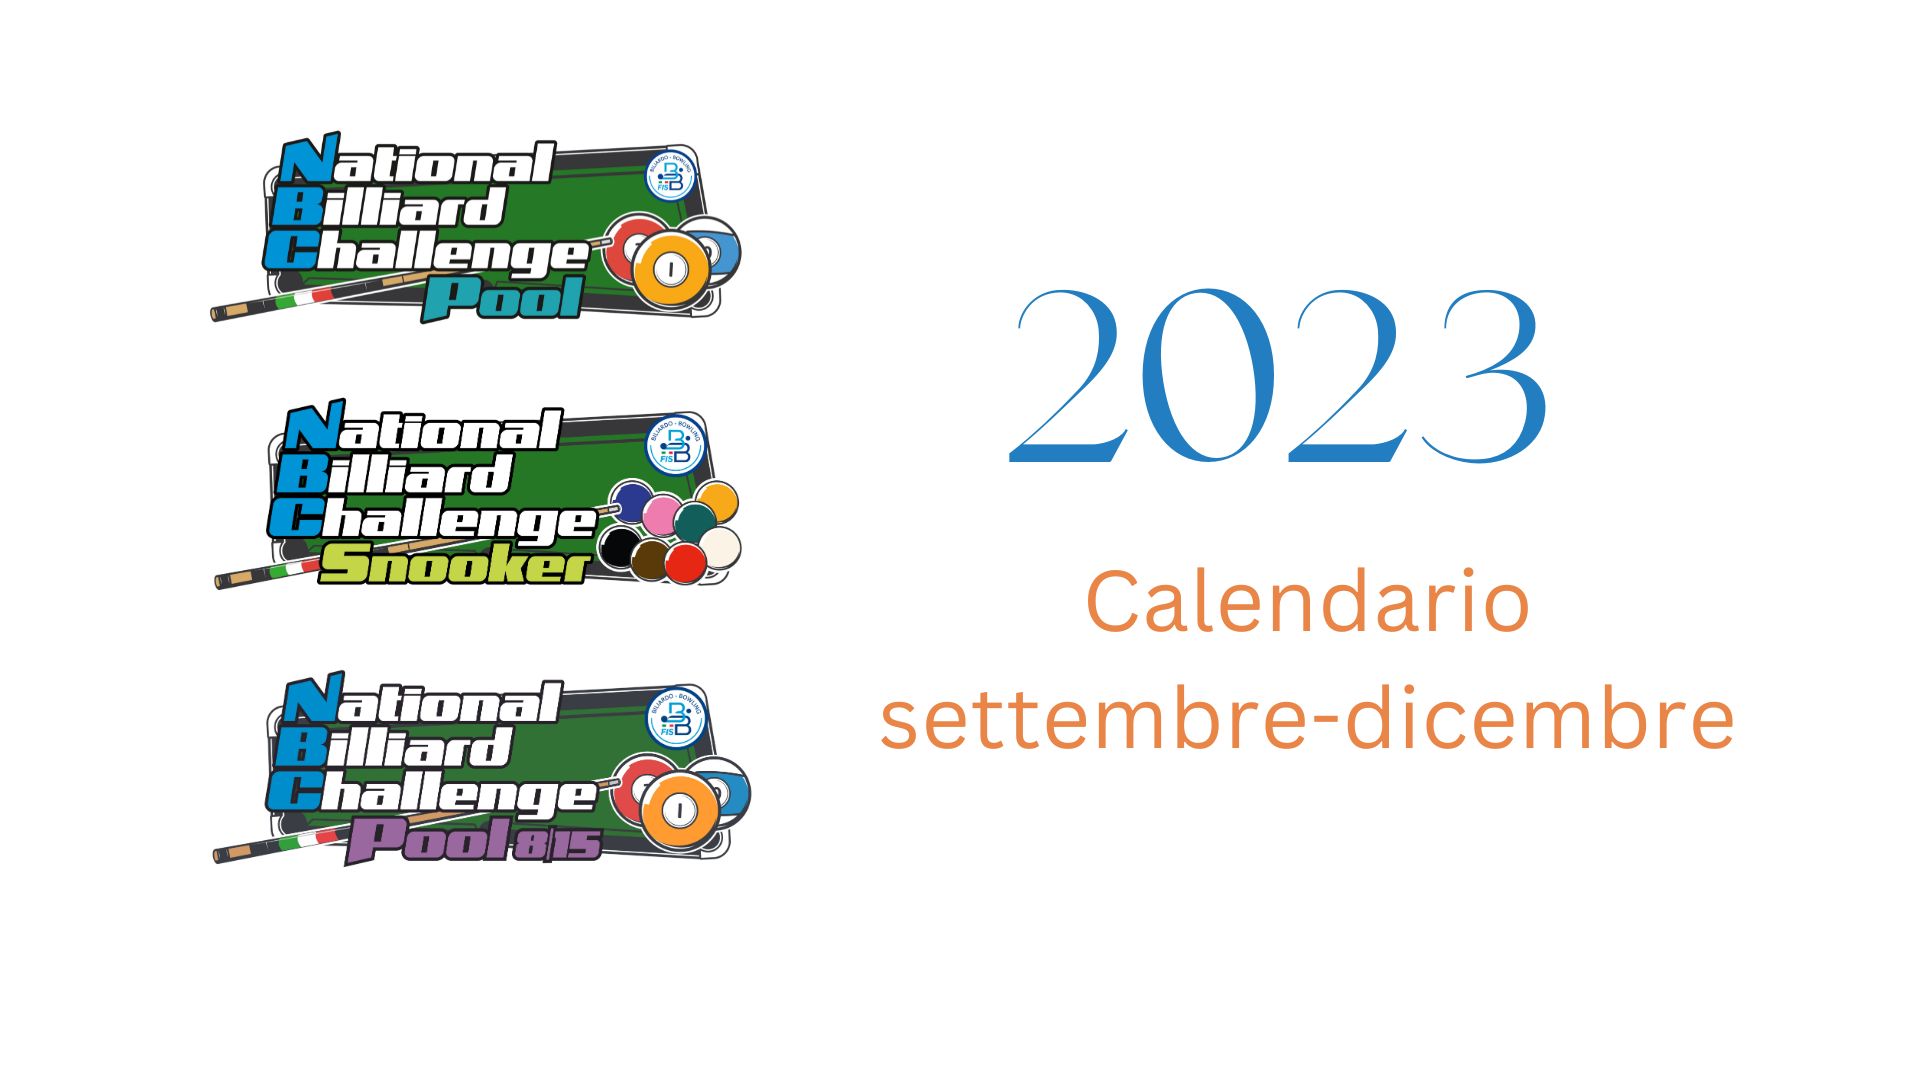 CALENDARIO DISCIPINA POCKET: SETTEMBRE-DICEMBRE 2023